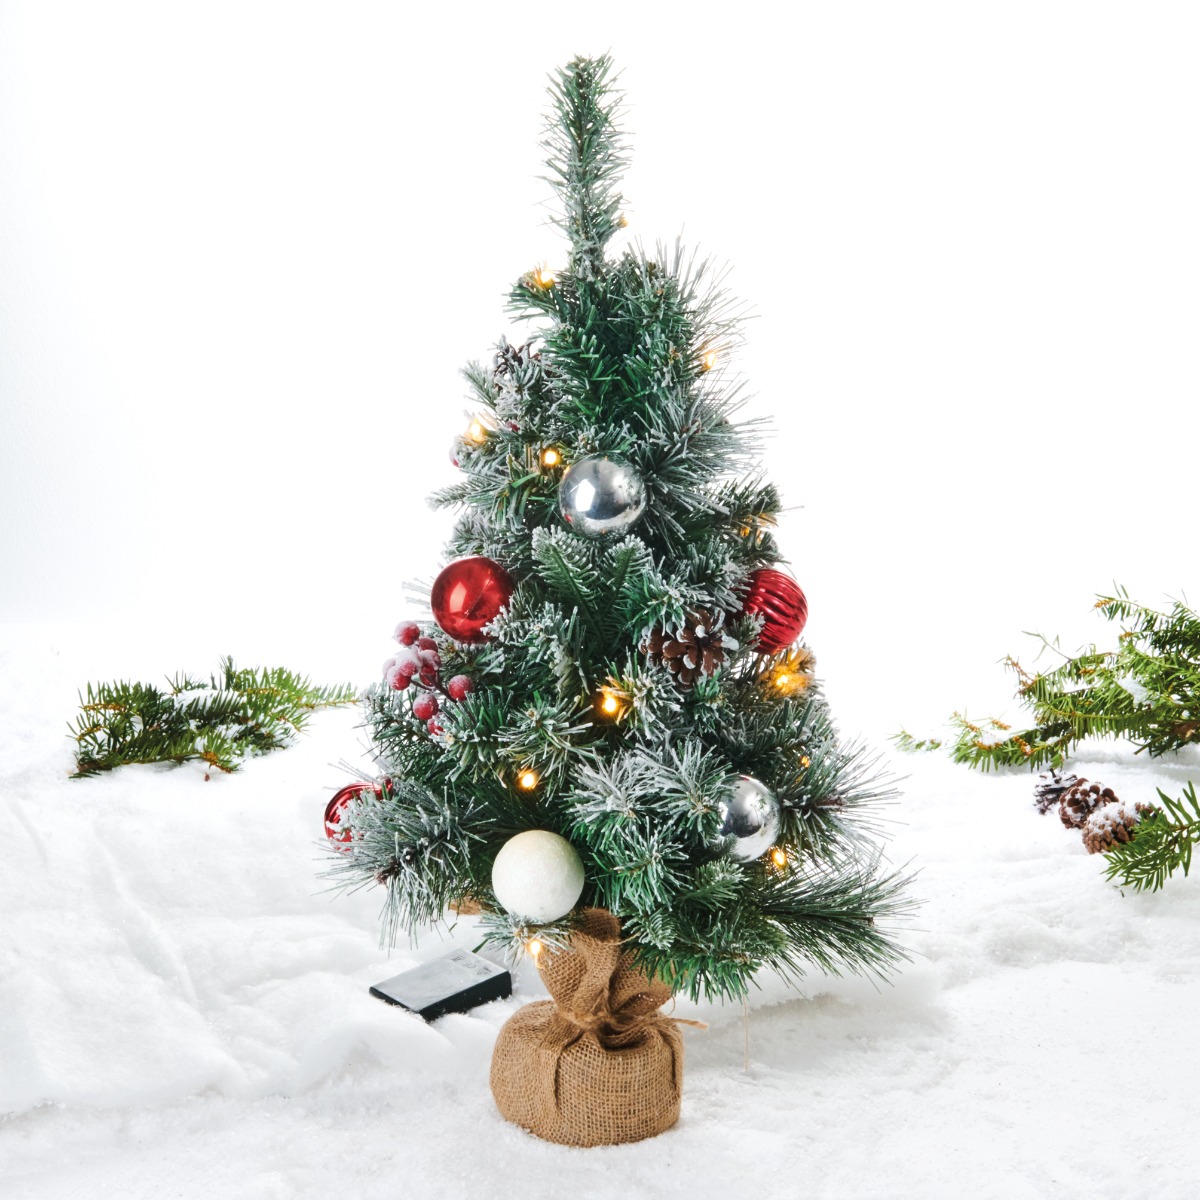 Juletræ med lys og julekugler